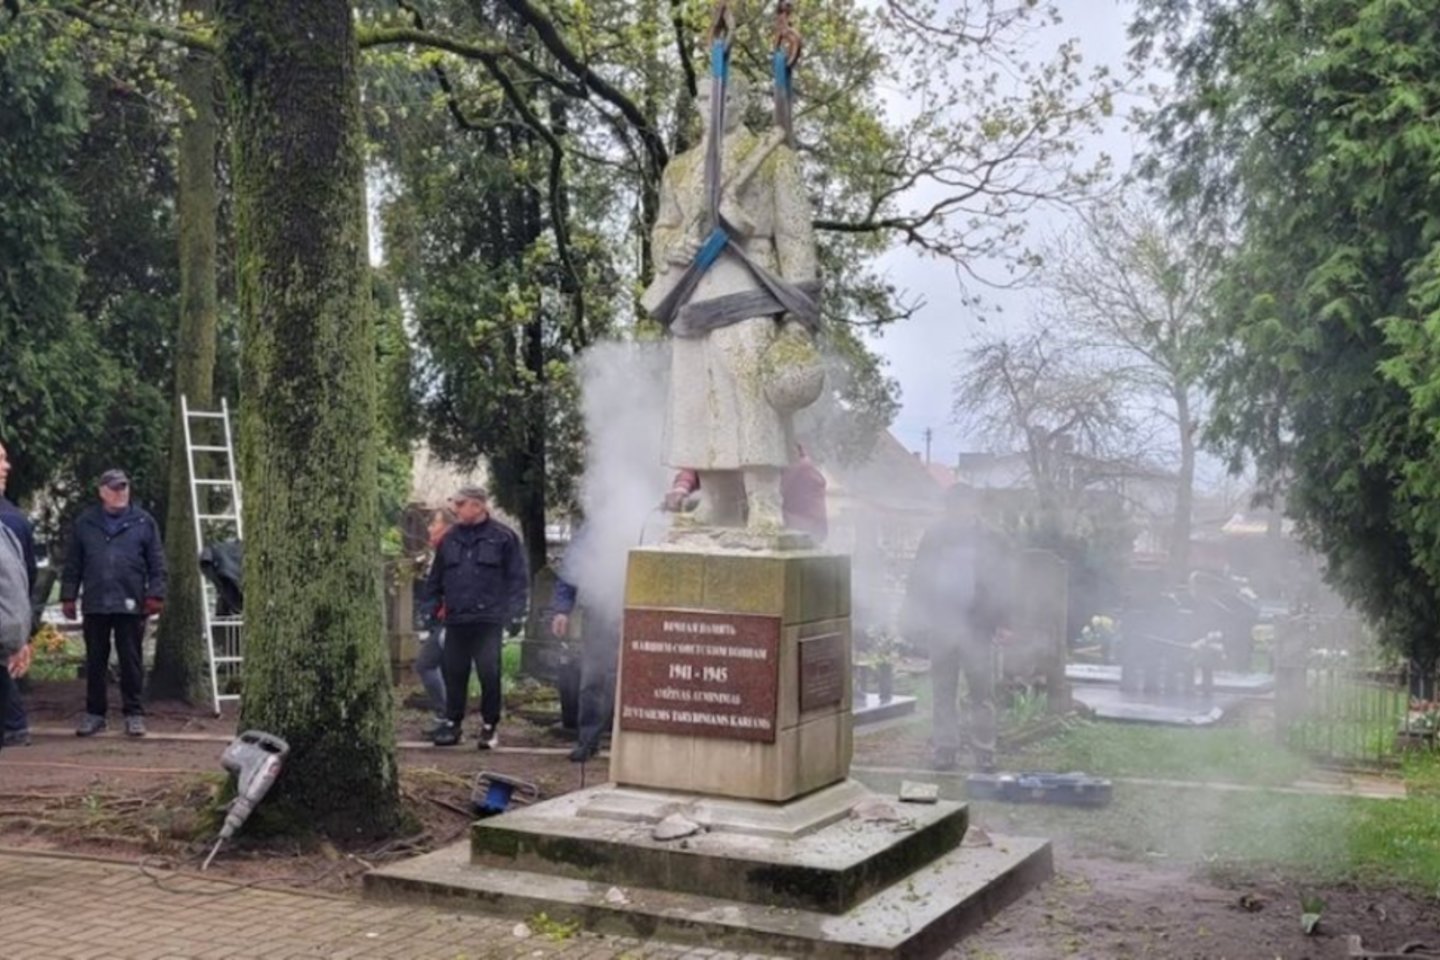  Kėdainių rajone nukeliami du paminklai sovietų kariams.<br> Kėdainių rajono savivaldybės nuotr.